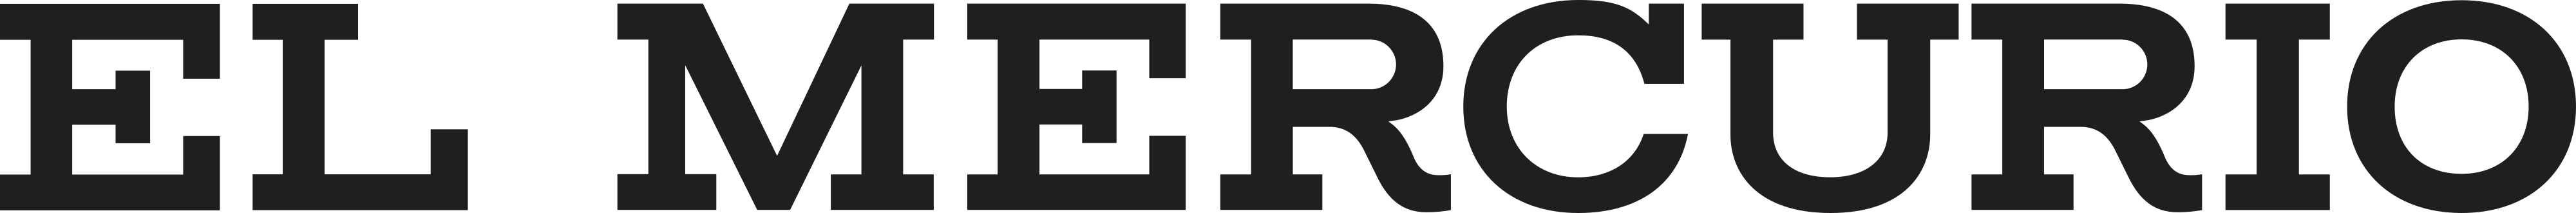 El Mercurio logo - download.